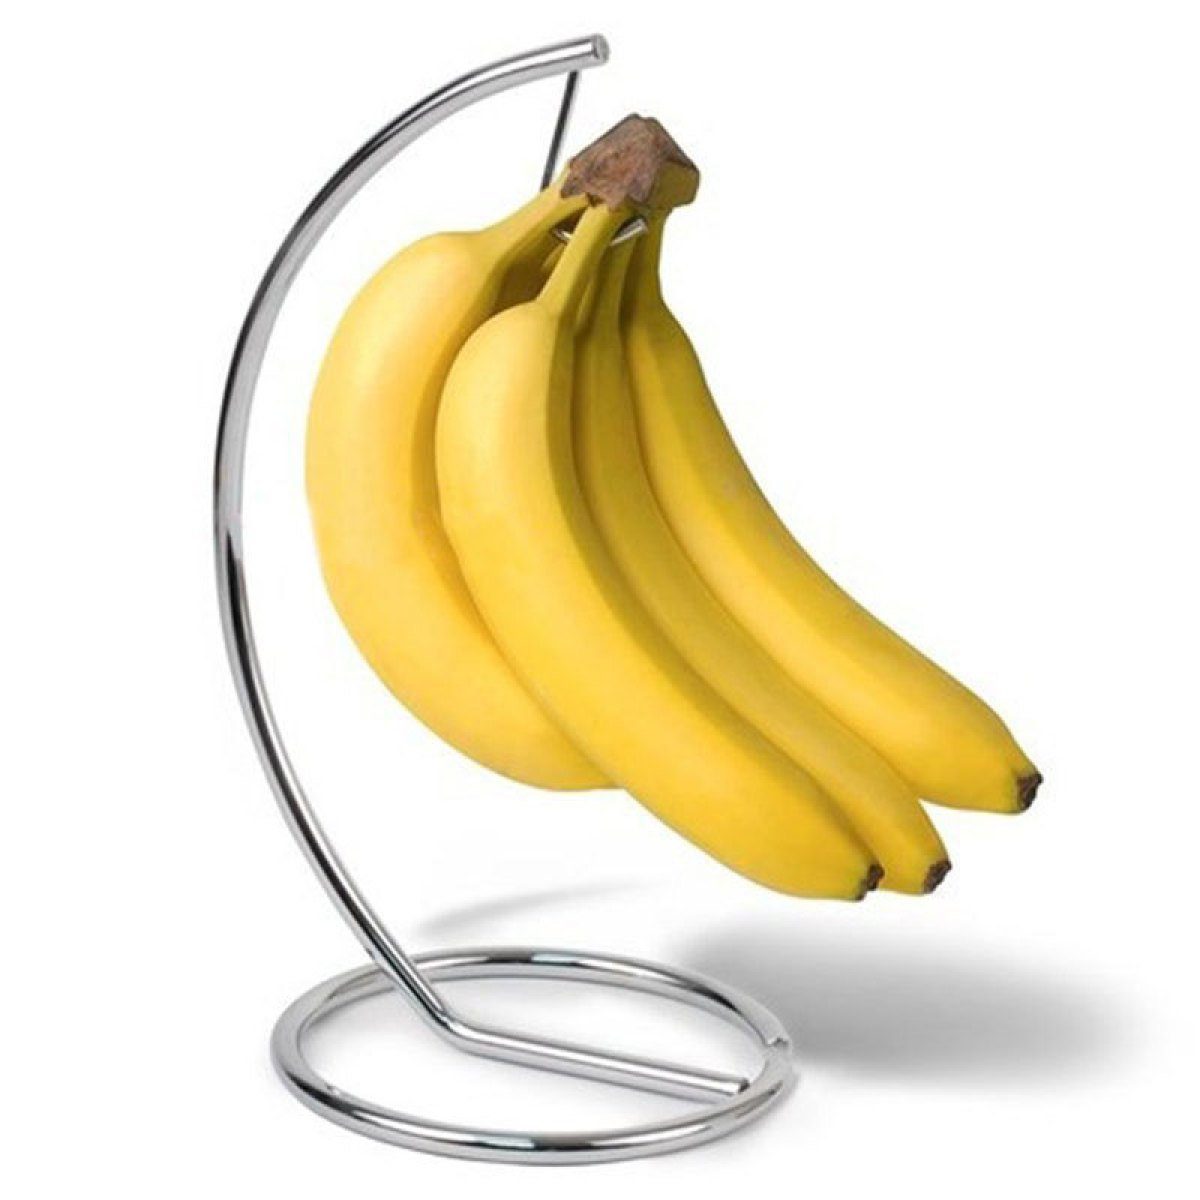 Bananenhalter Bananen,Trauben, mit runder Silber Speicher, Halter Jormftte Basis,Obst